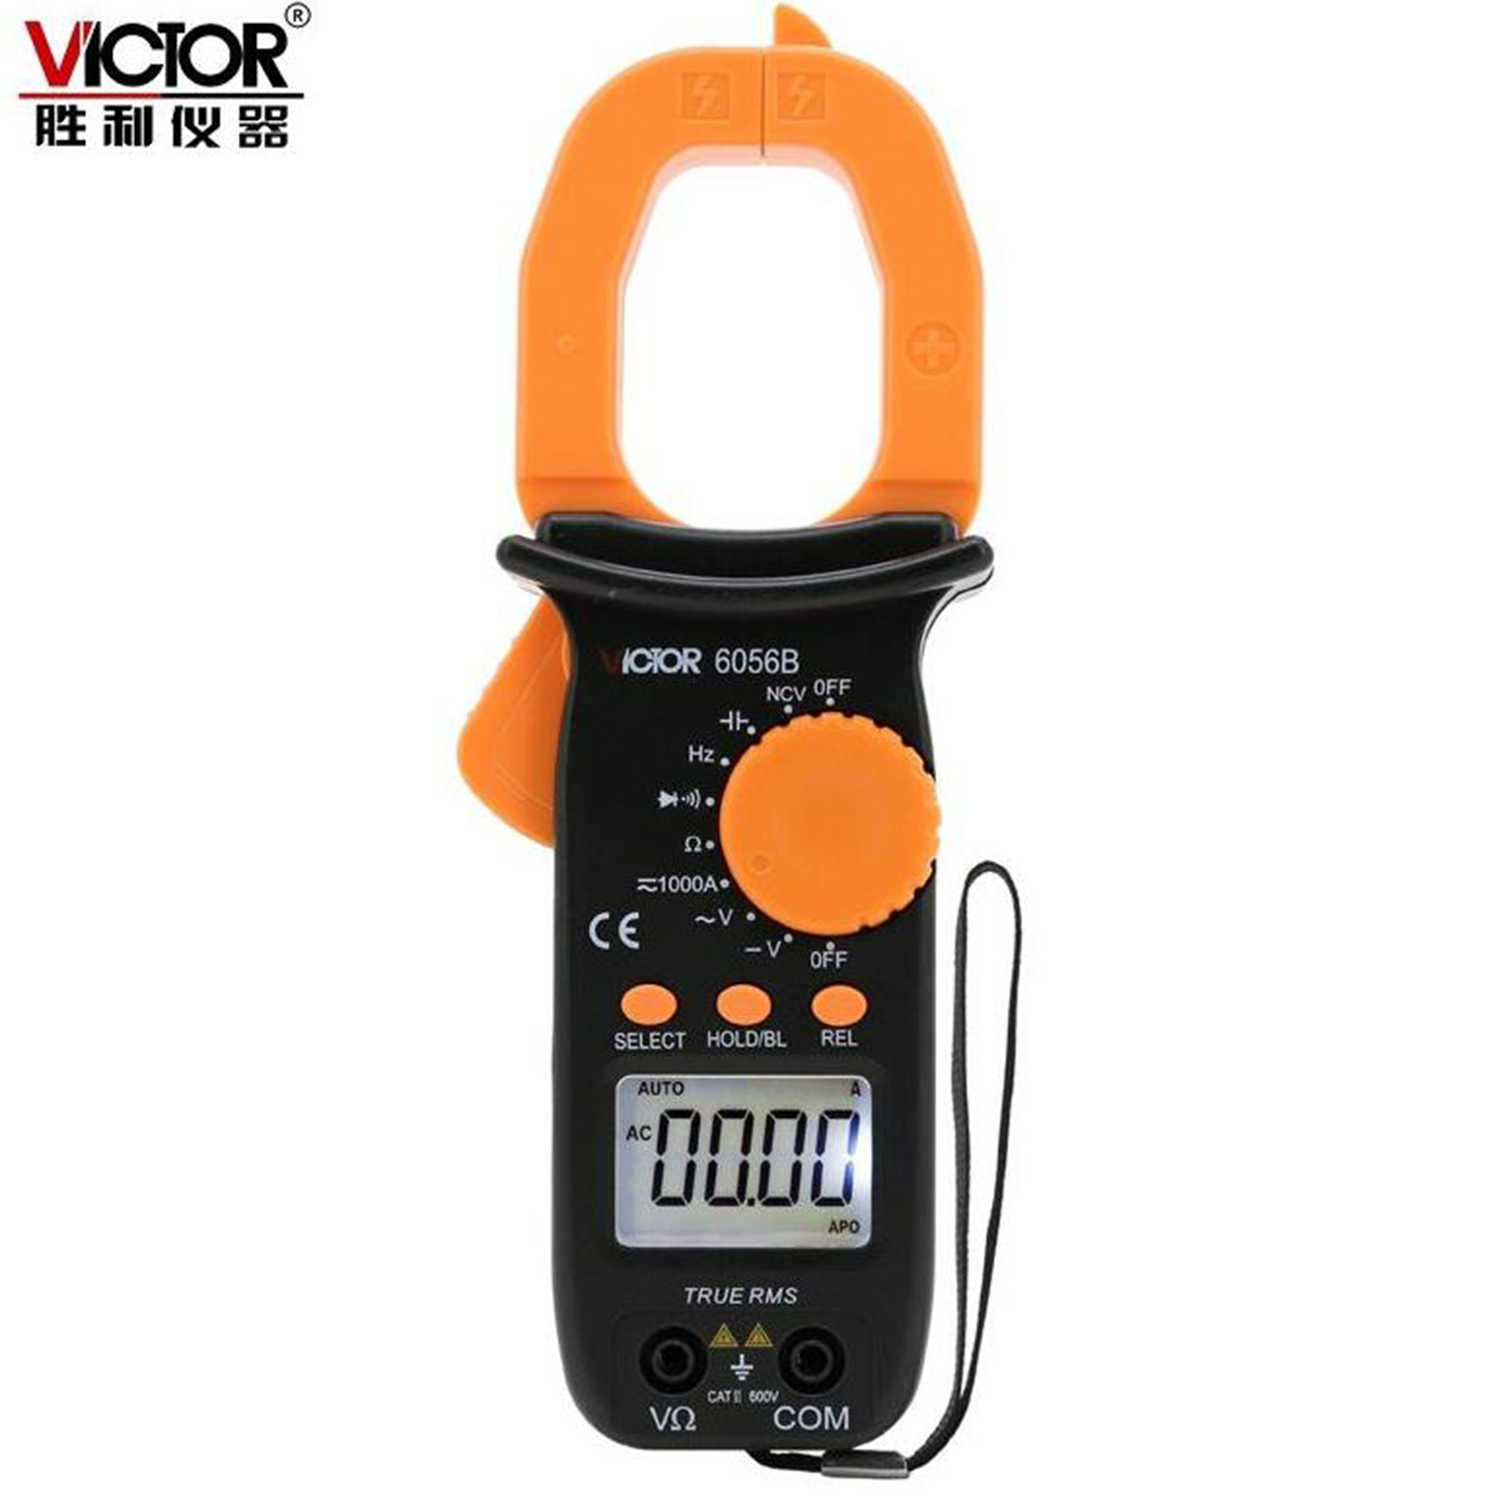 Victor VC6056B VC6056A plus VC6056C plus VC6056E True RMS Digitale klemmeter Current Meter AC DC -spanningsweerstand Ammeter.